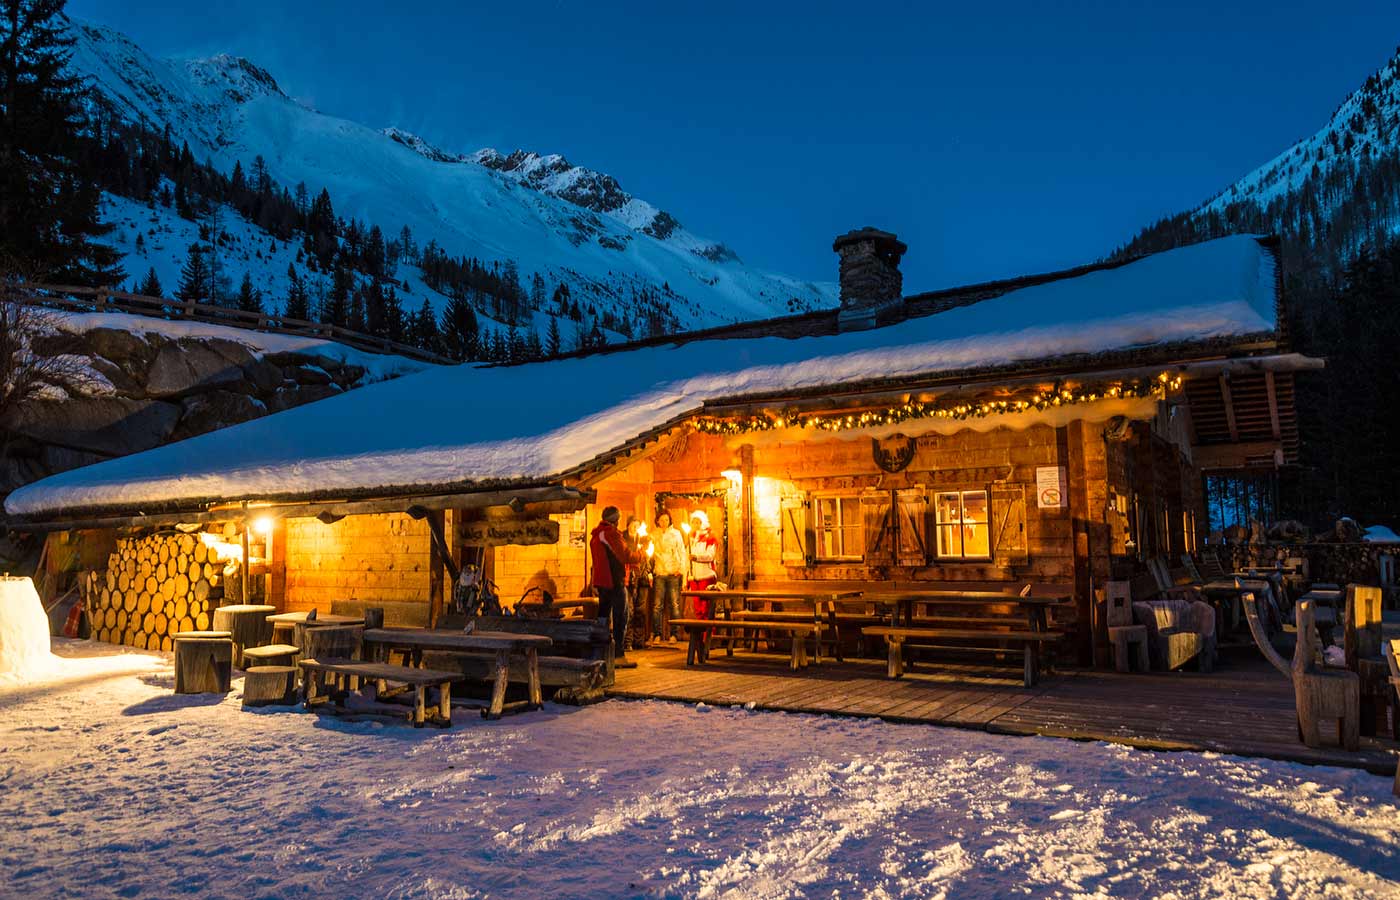 Romantisches Ambiente auf einer Hütte: Schneebedeckt und hell beleuchtet.